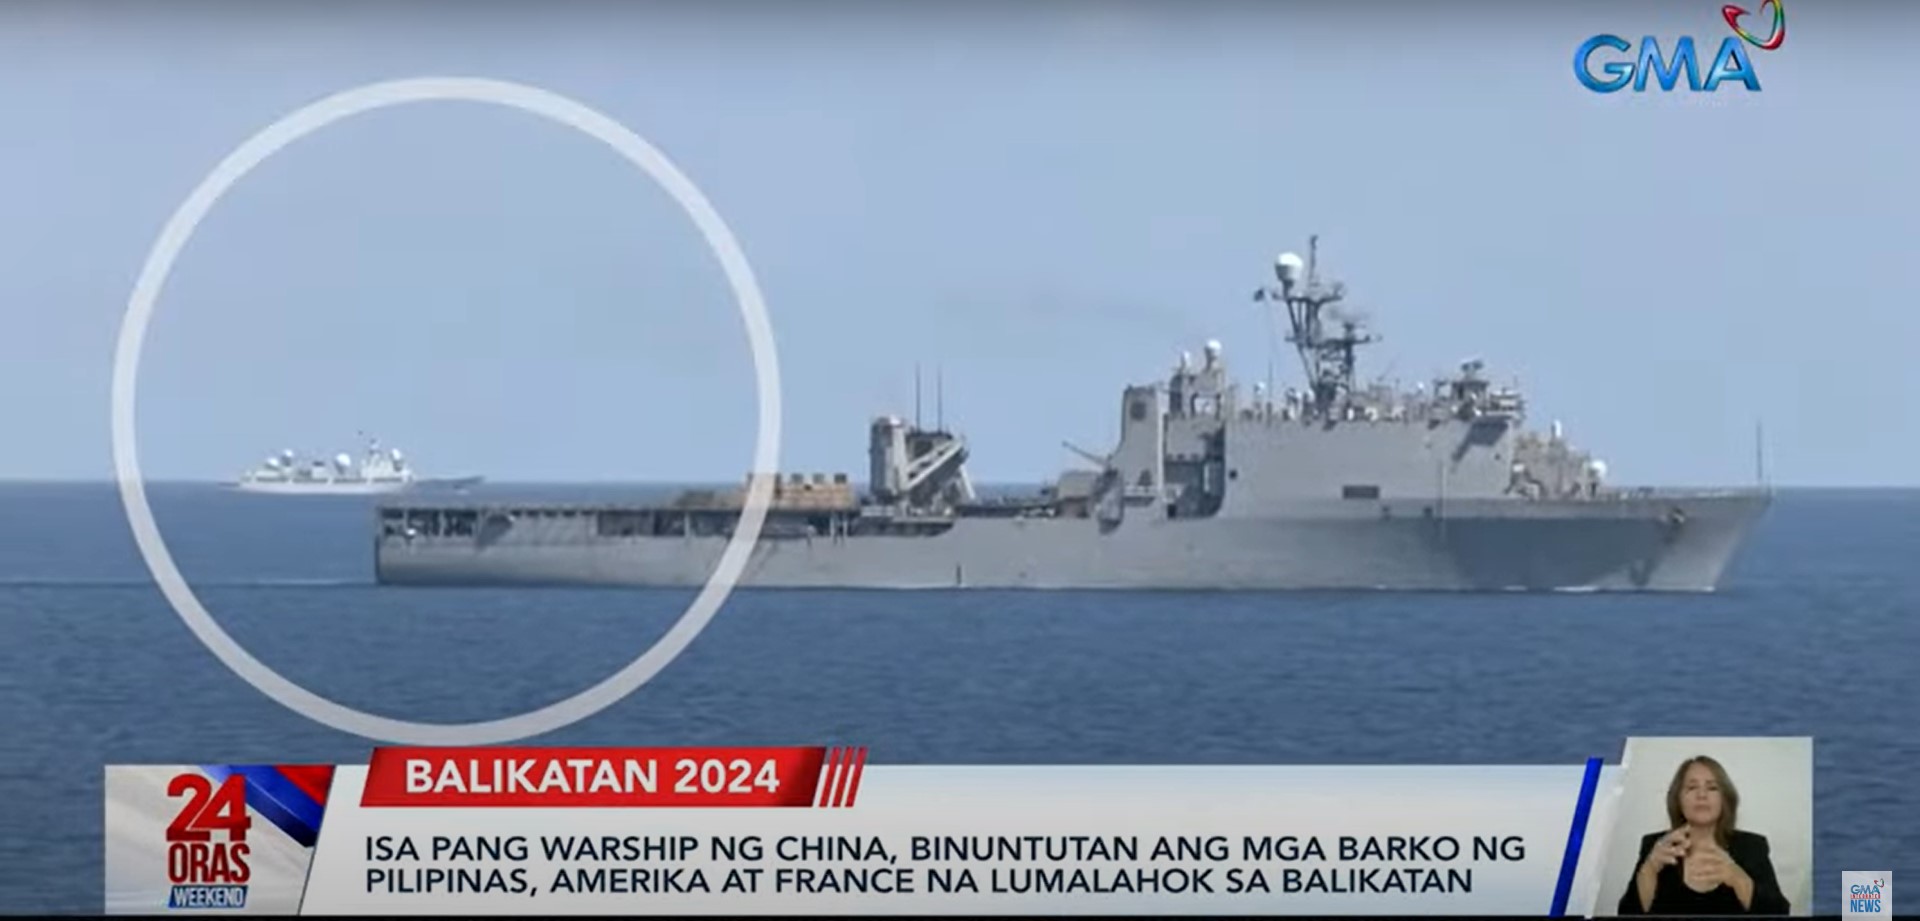 more chinese ships shadowing ph, us navies during balikatan